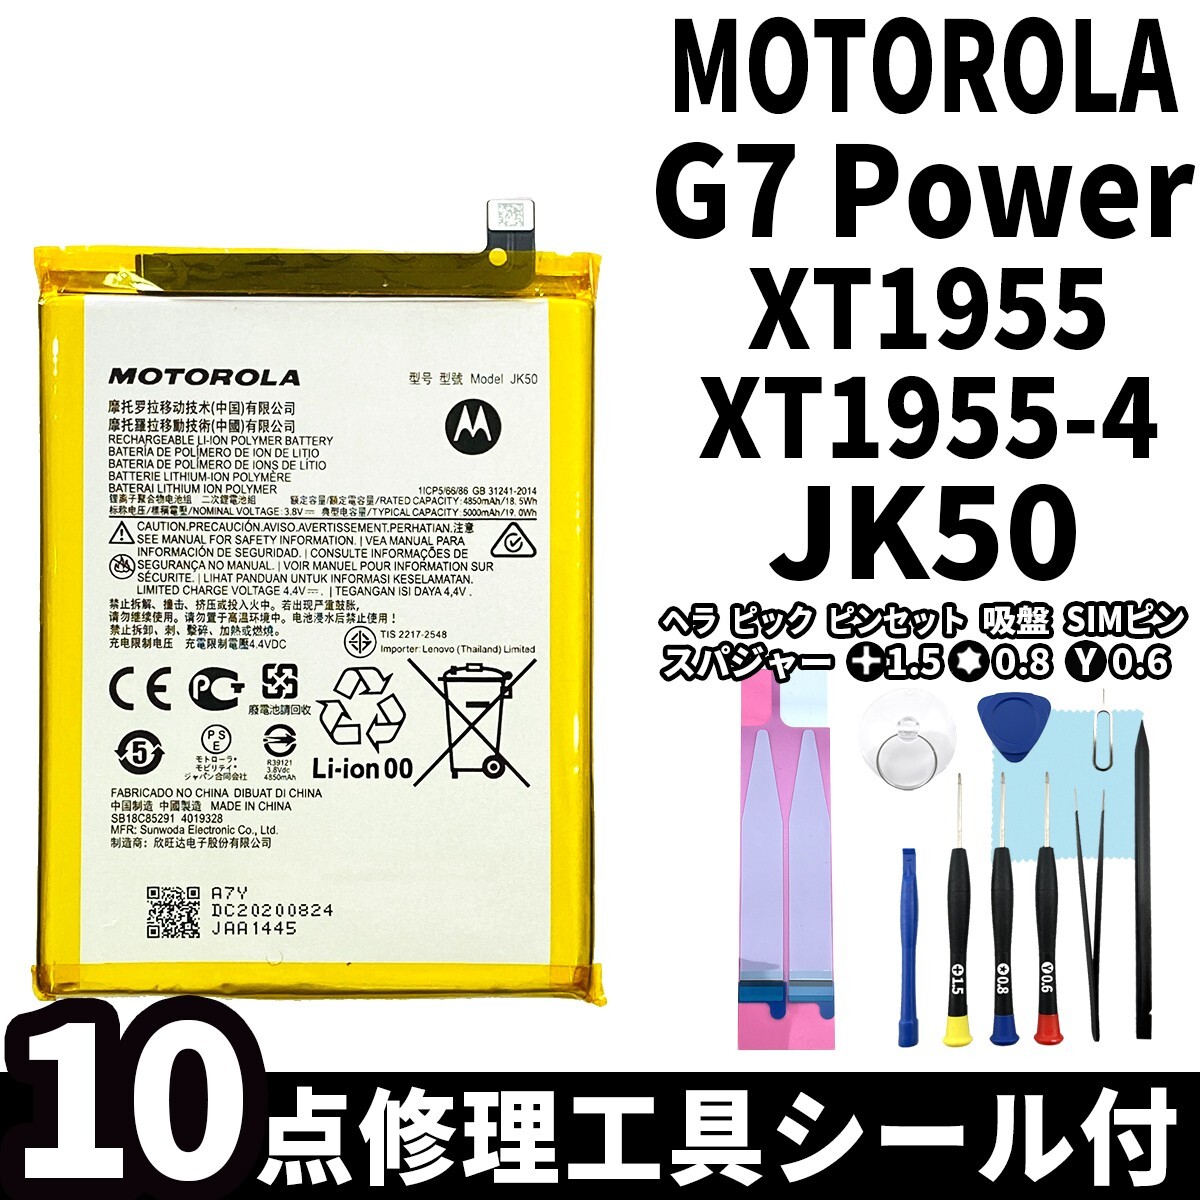 国内即日発送!純正同等新品! MOTOROLA G7 Power バッテリー JK50 XT1955 電池パック交換 内蔵battery 両面テープ 修理工具付_画像1